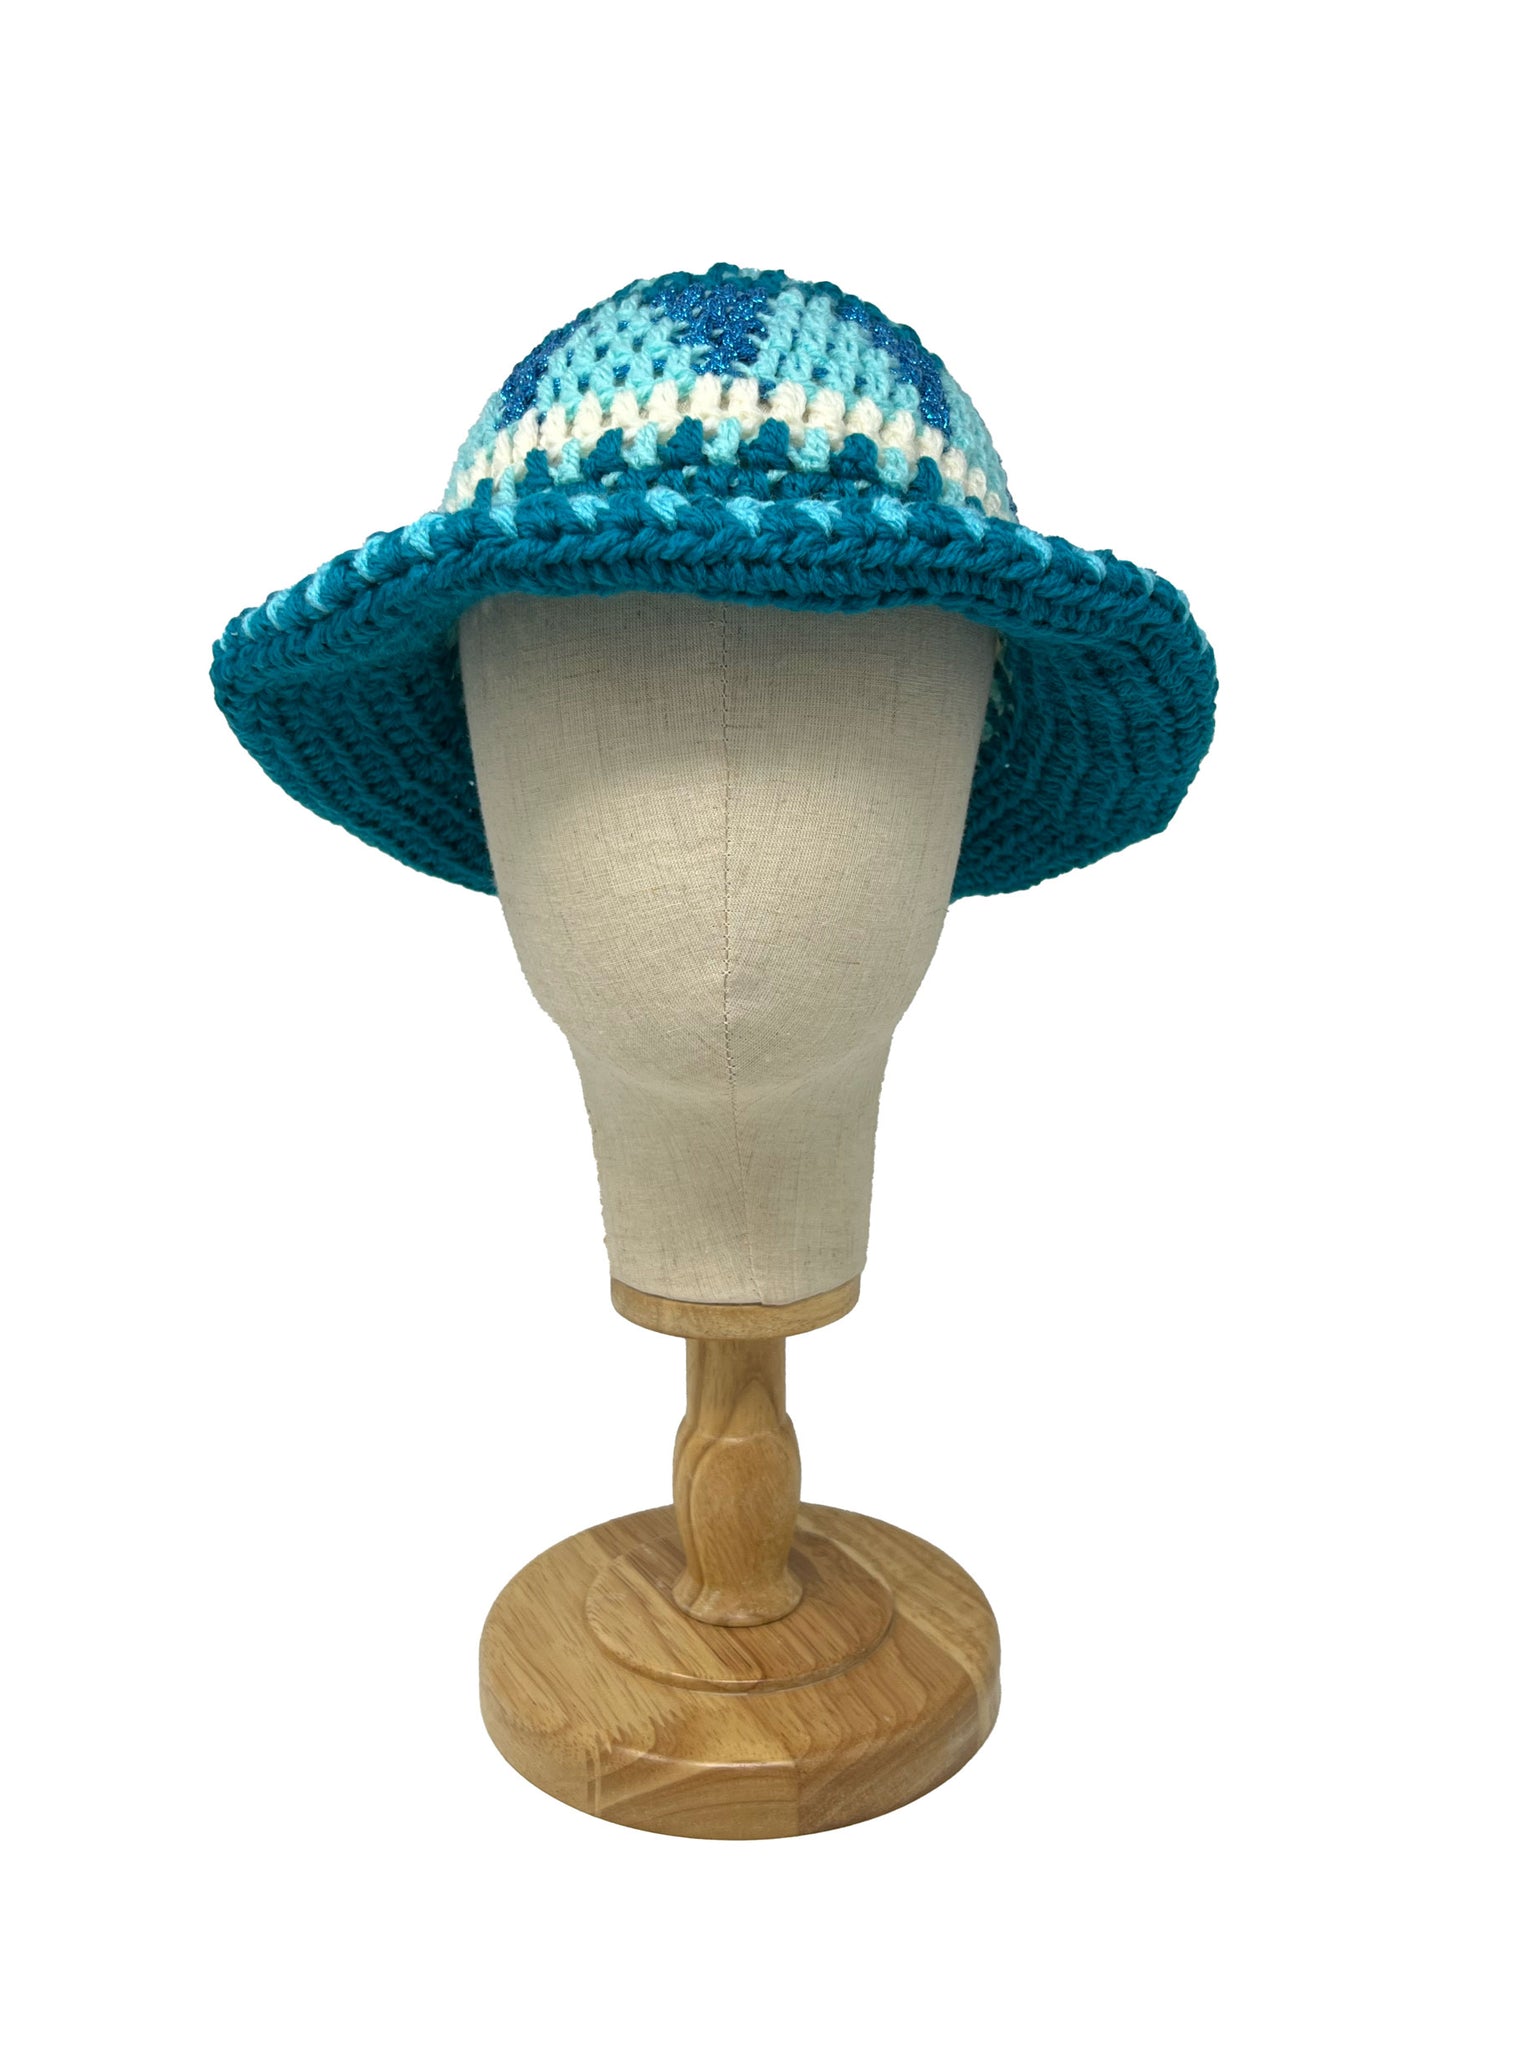 Cappello a secchiello lavorato all'uncinetto in lana etnica turchese e azzurro